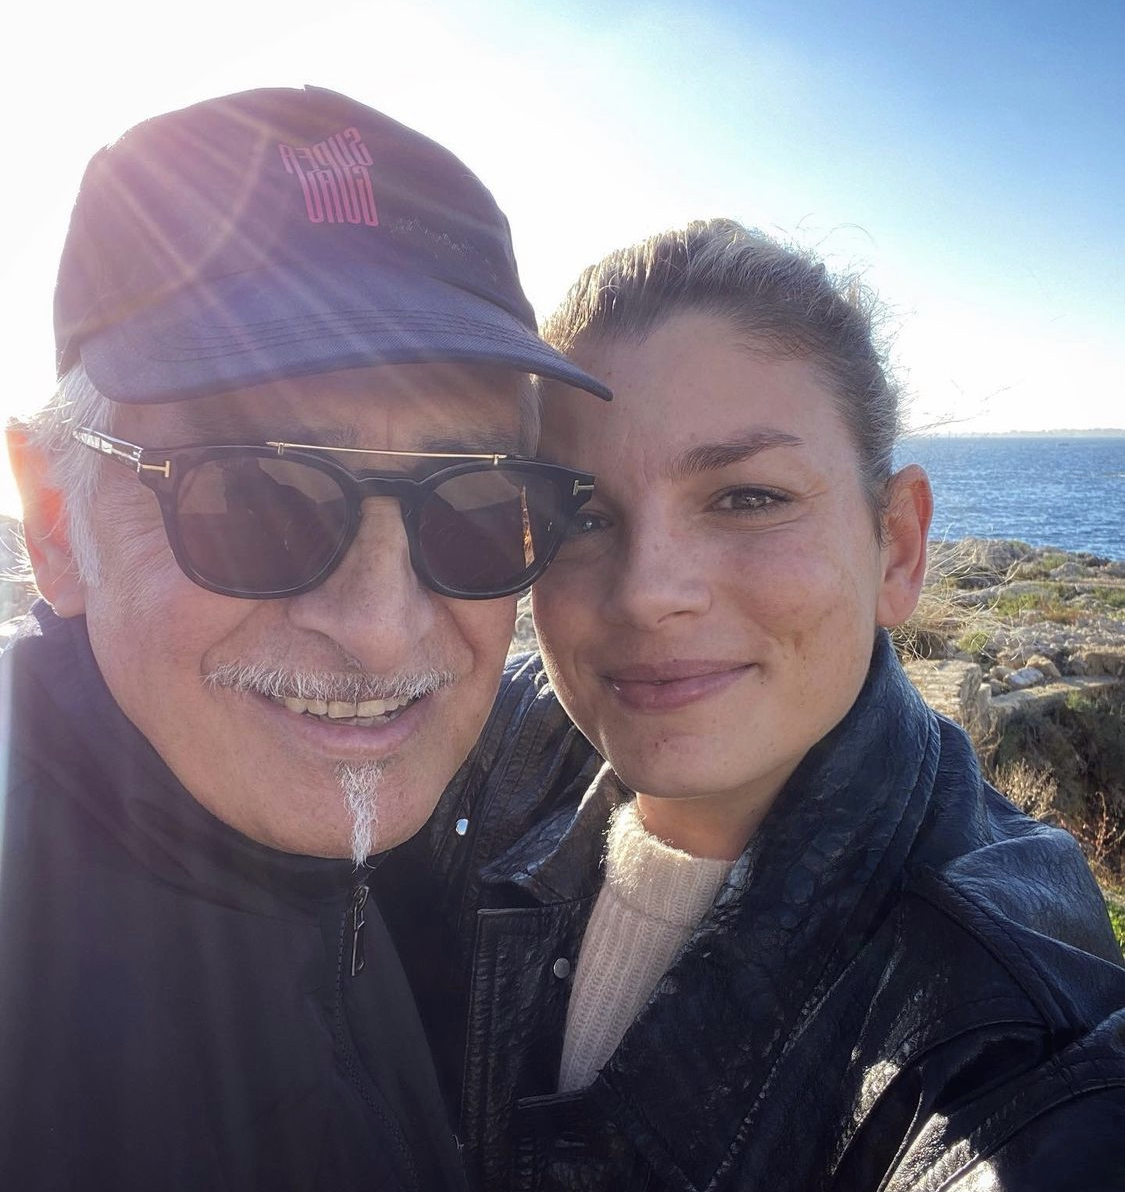 Lutto per Emma Marrone, muore papà Rosario nella notte. La cantante su Instagram: "Ti amo e ti amerò per sempre"